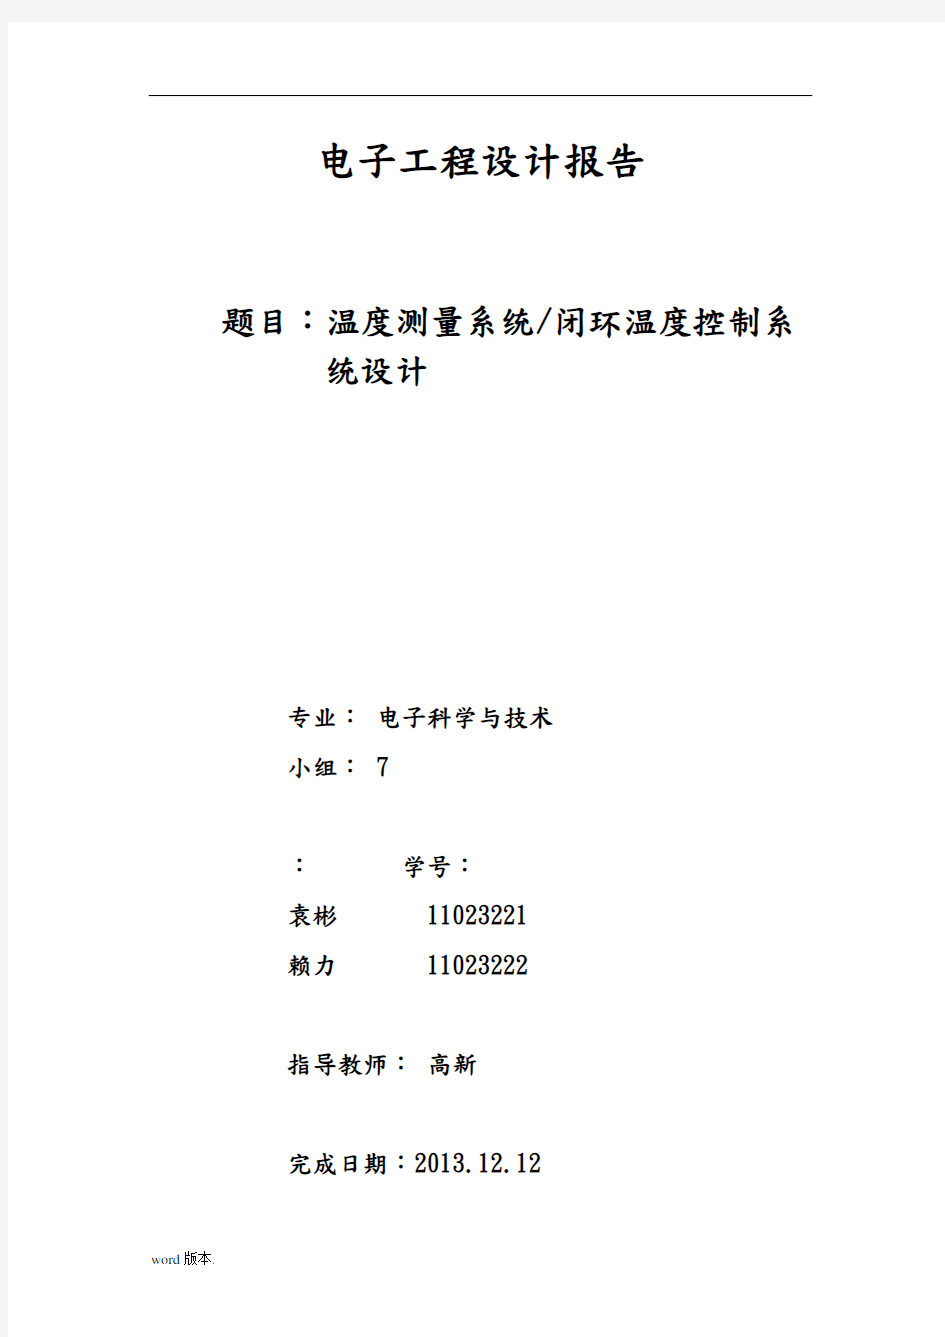 北京工业大学电子工程设计--二阶实验报告